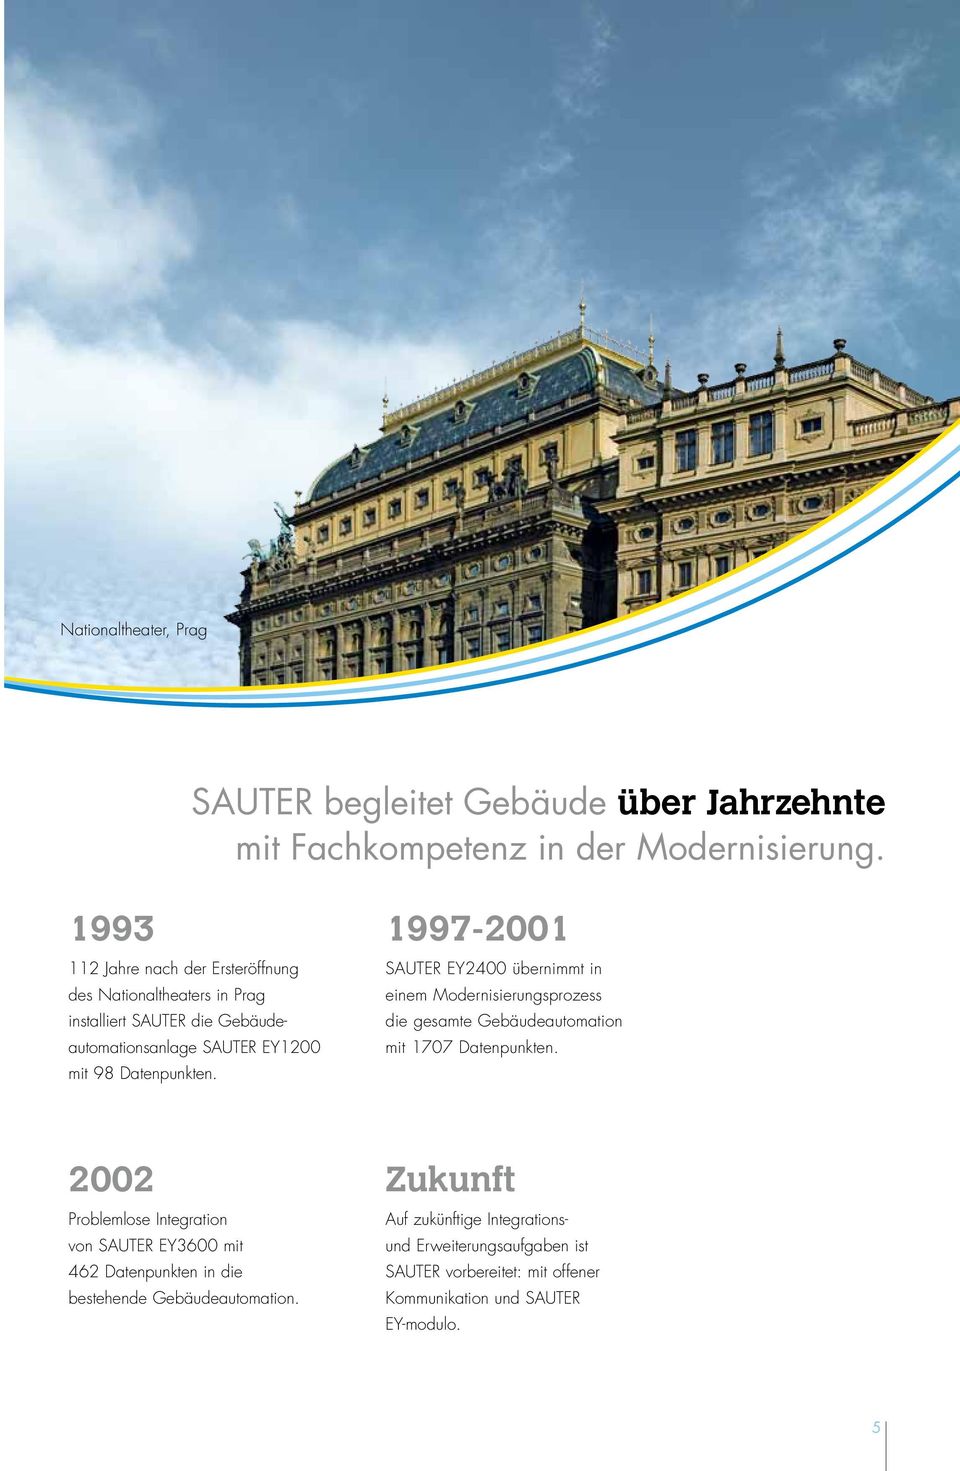 1997-2001 SAUTER EY2400 übernimmt in einem Modernisierungsprozess die gesamte Gebäudeautomation mit 1707 Datenpunkten.